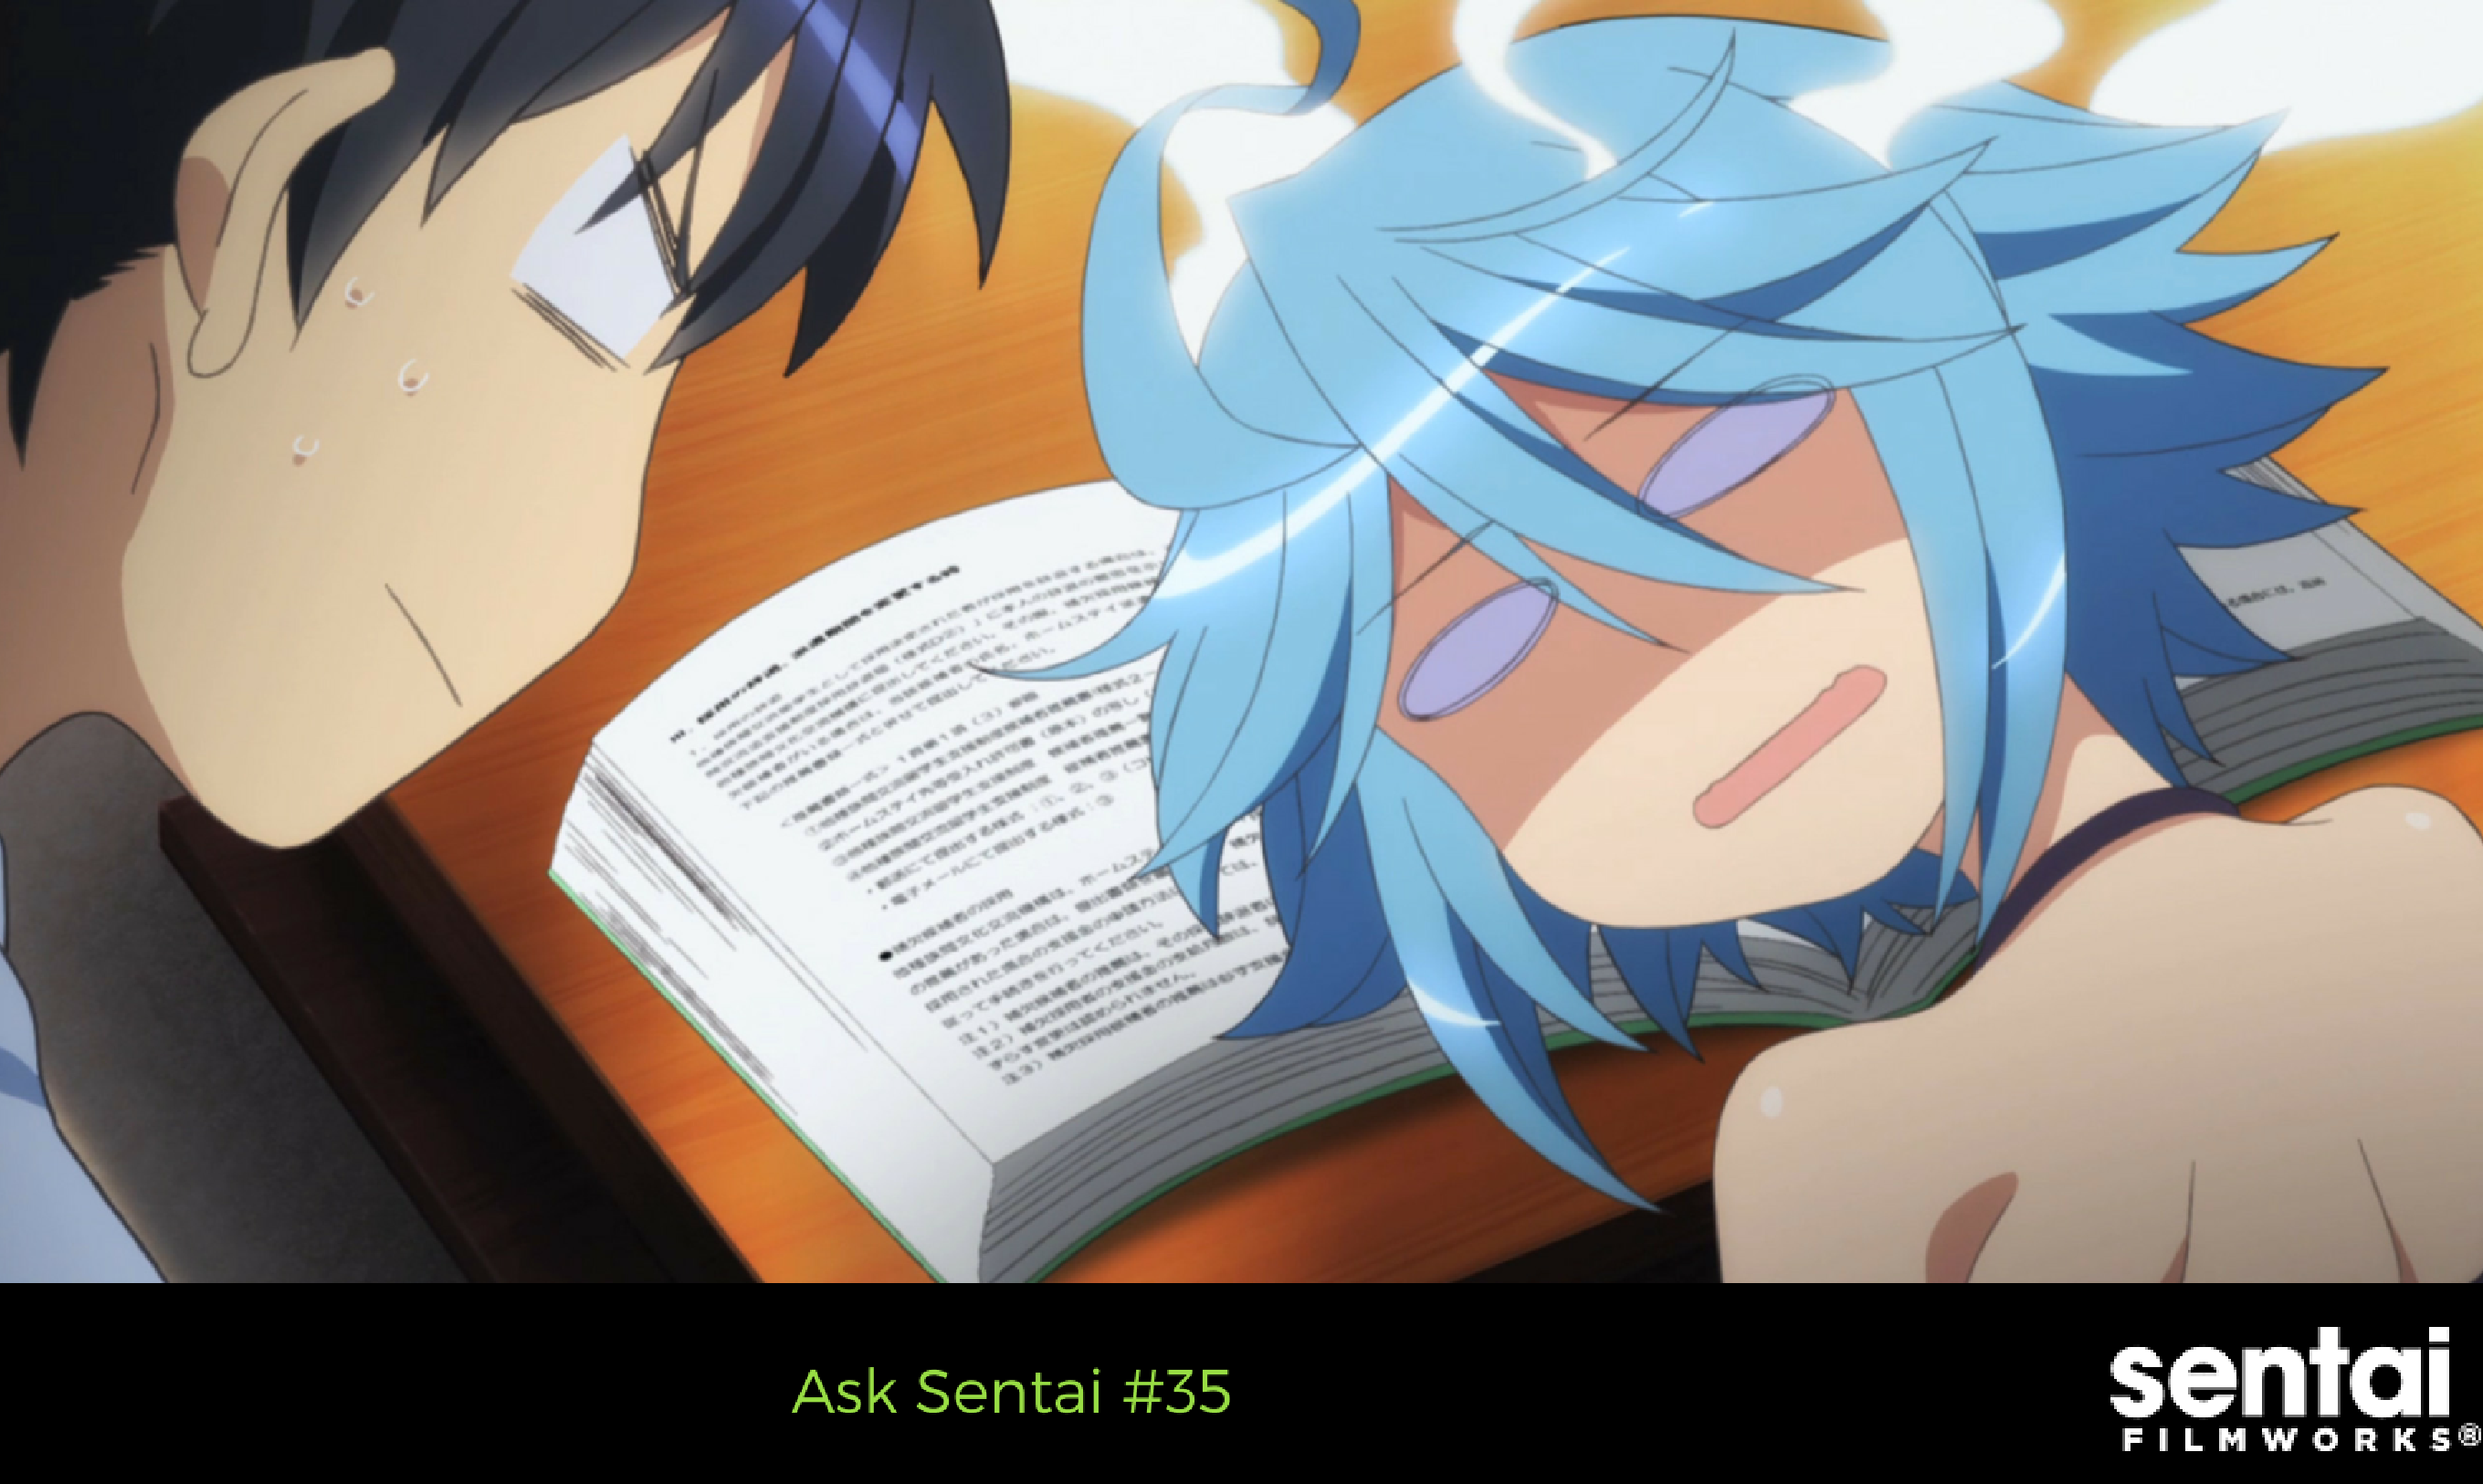 Ask Sentai #35